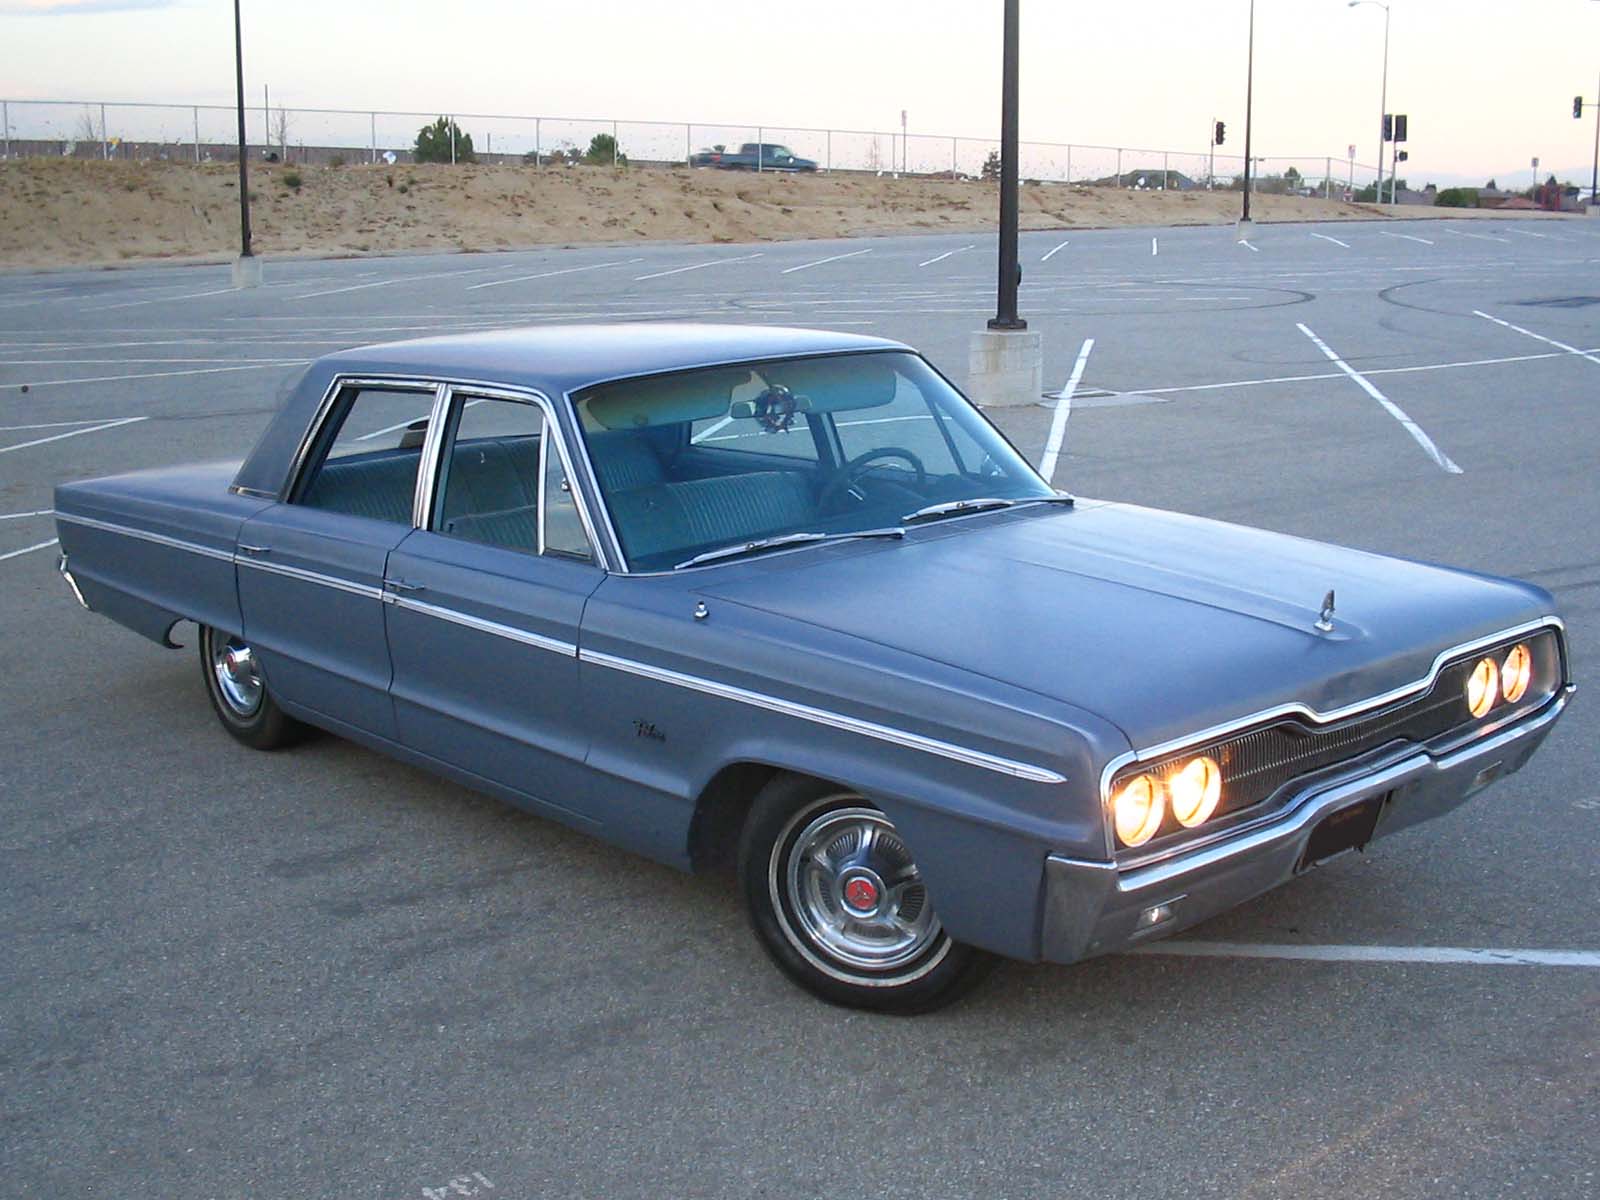 1966 Dodge Polara picture, exterior